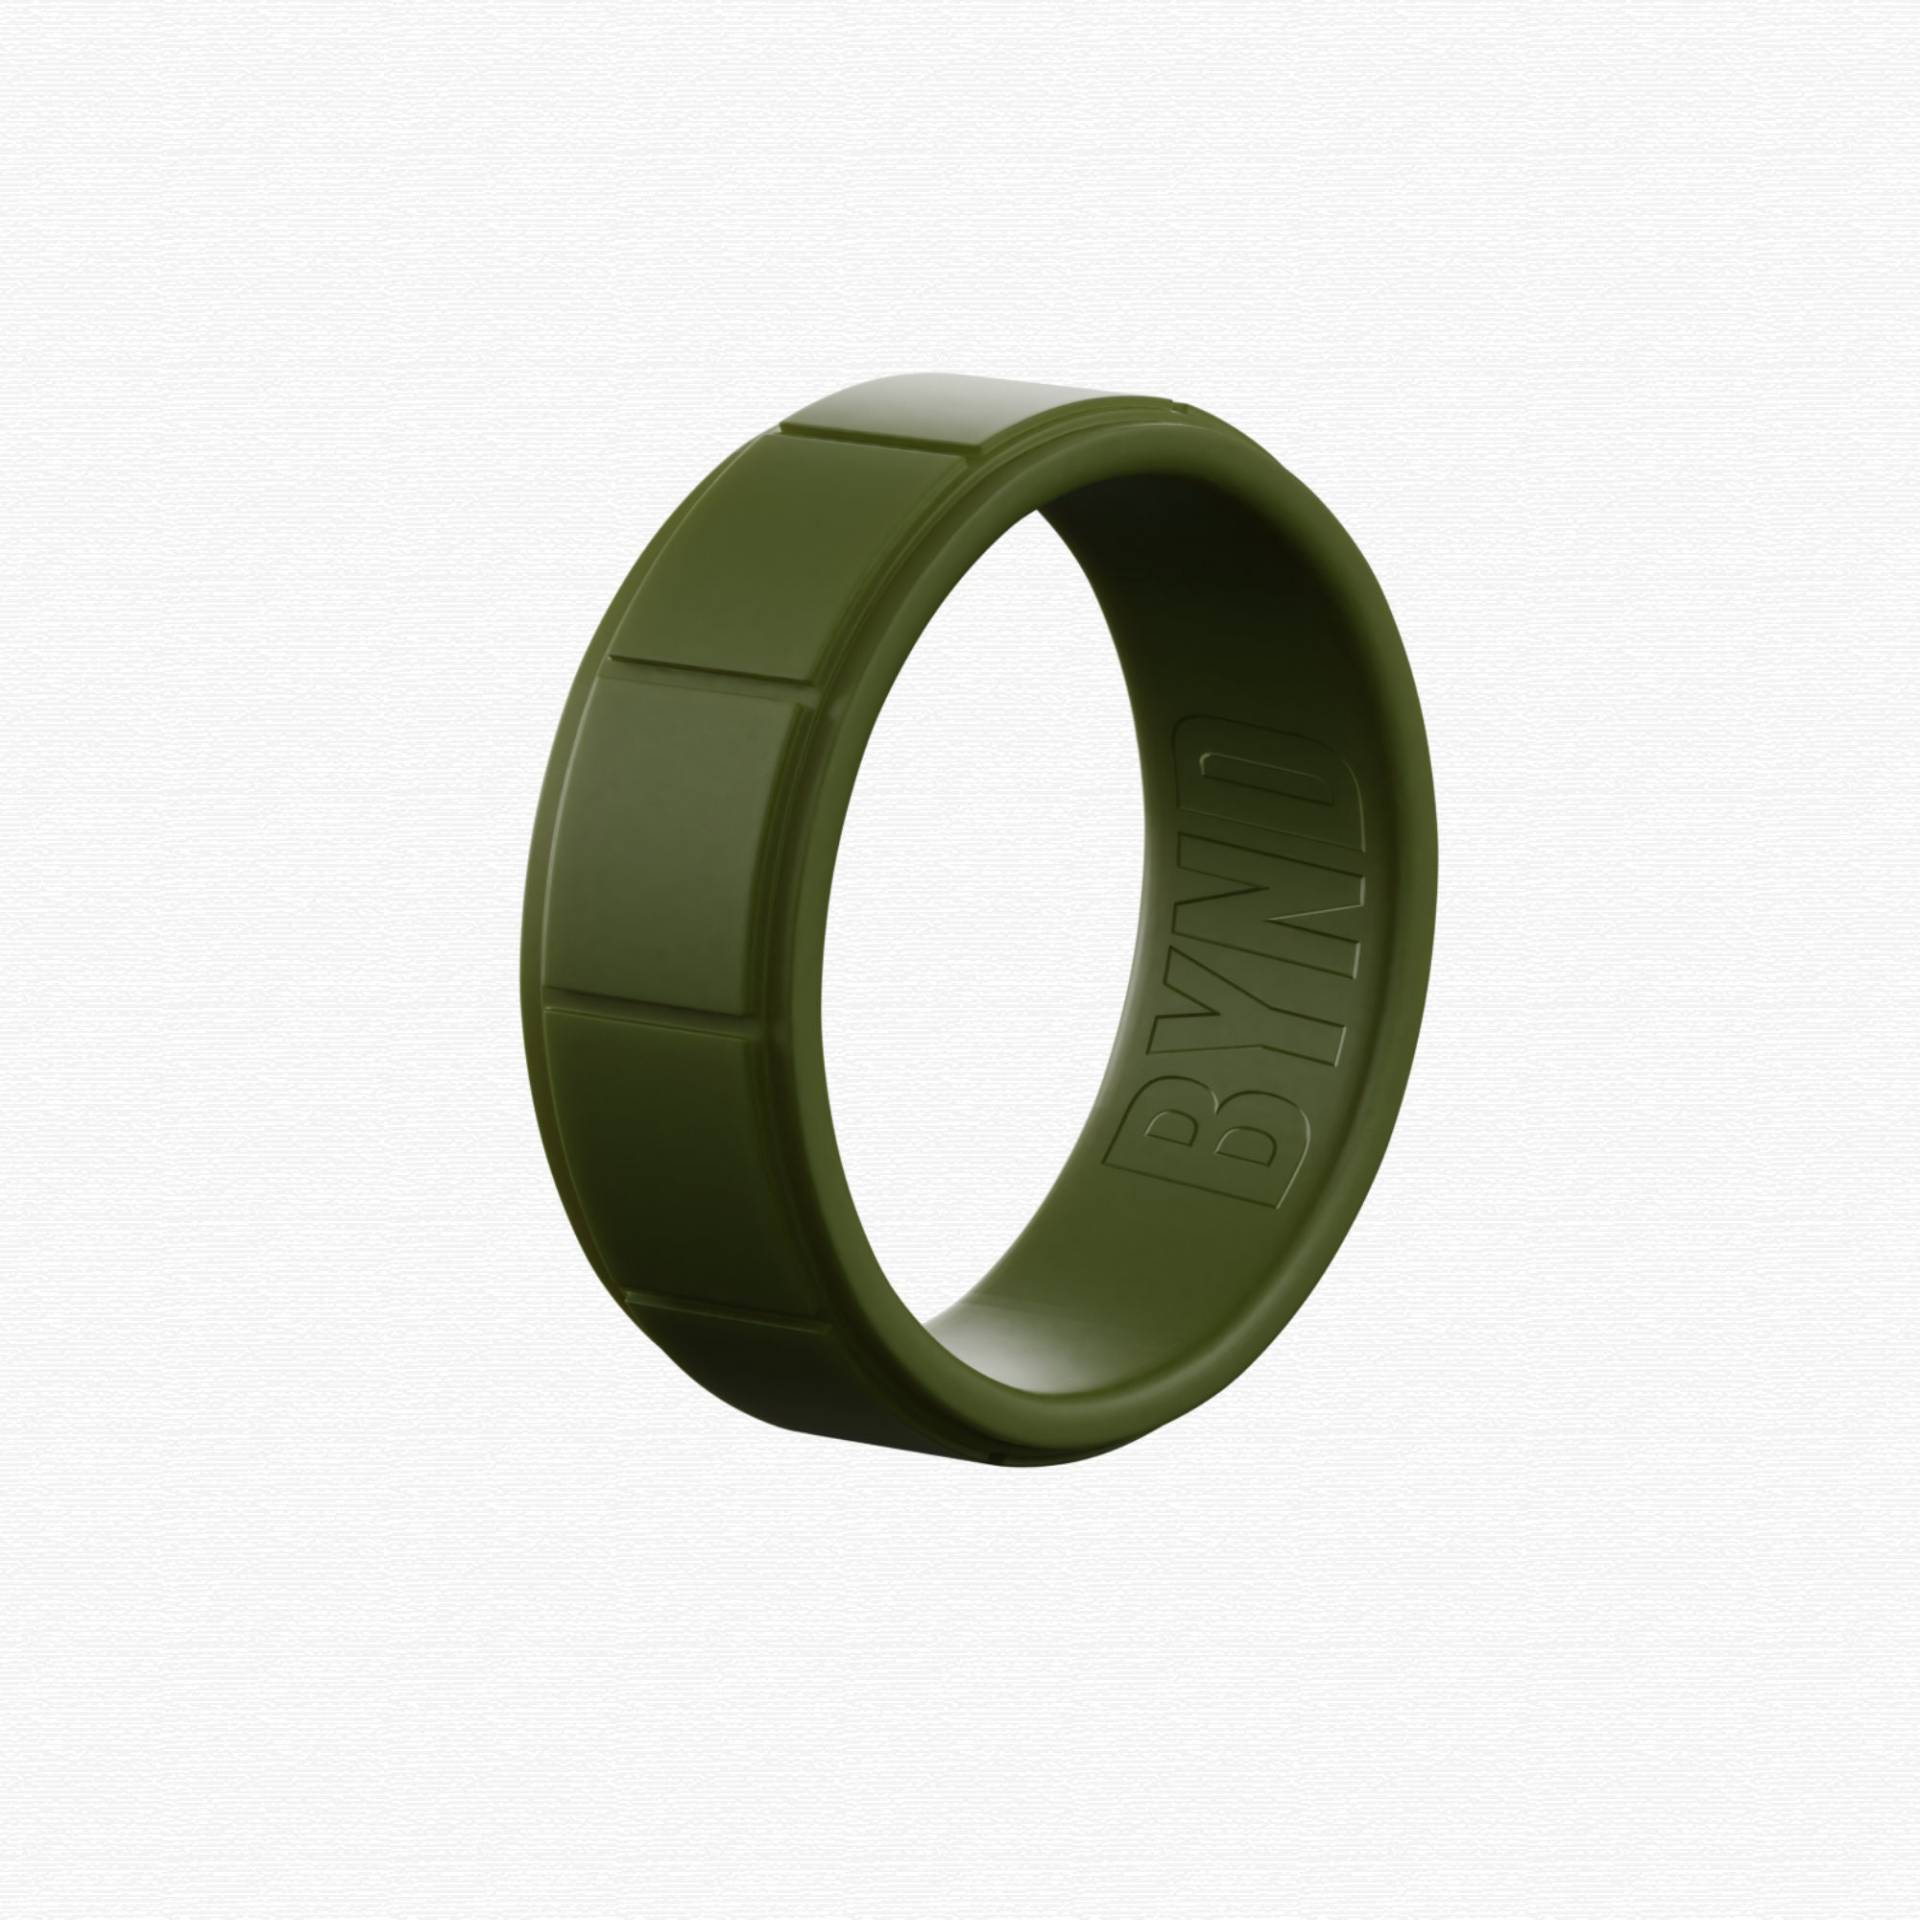 Olive Silikon Ehering - Flache Kante Design Gummi Das Perfekte Geschenk Für Ihren Mann, Freund Oder Verlobten von ByndRings